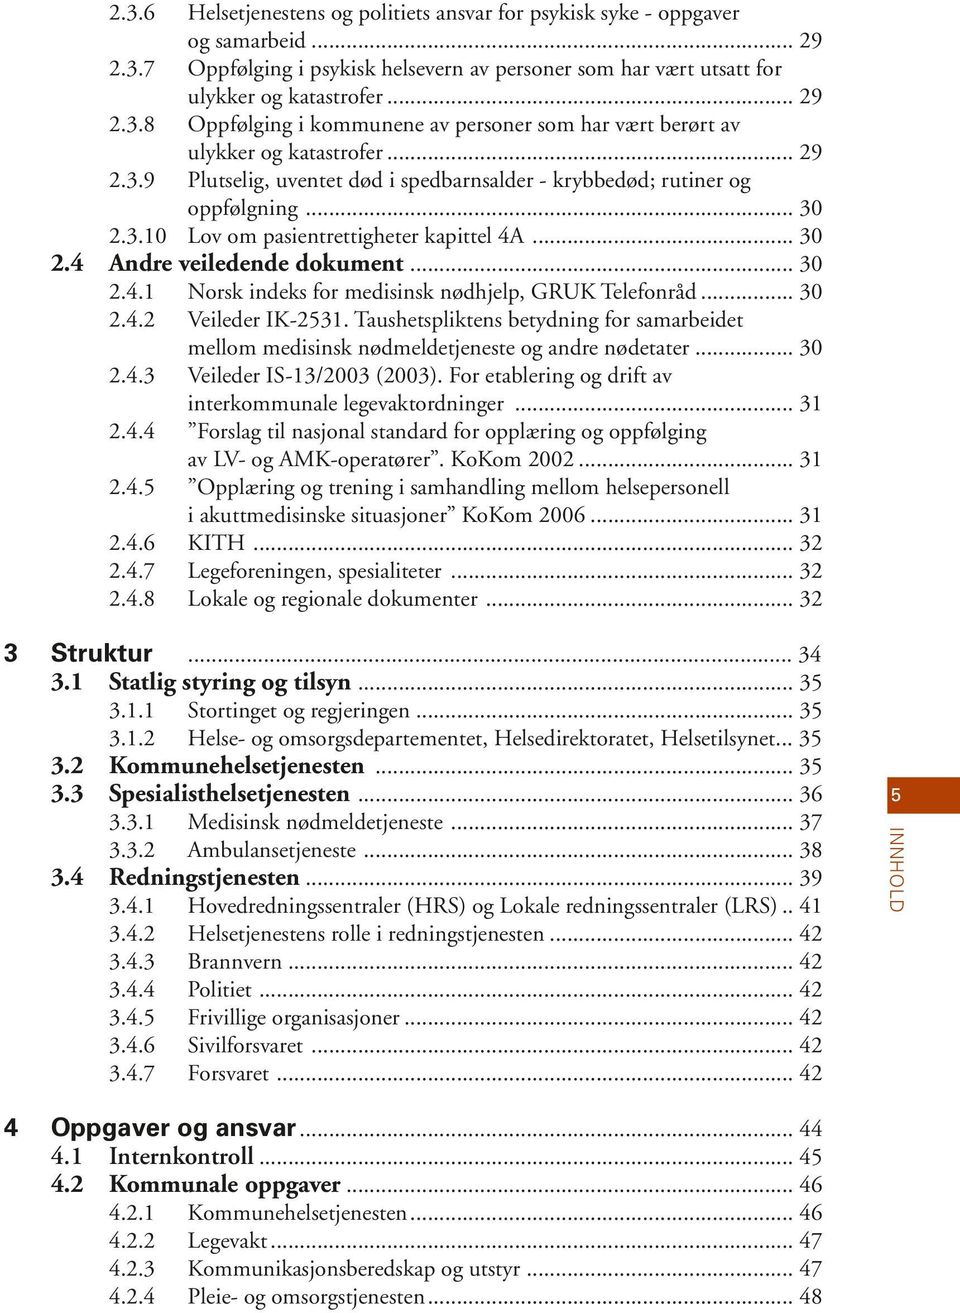 .. 30 2.4.2 Veileder IK-2531. Taushetspliktens betydning for samarbeidet mellom medisinsk nødmeldetjeneste og andre nødetater... 30 2.4.3 Veileder IS-13/2003 (2003).